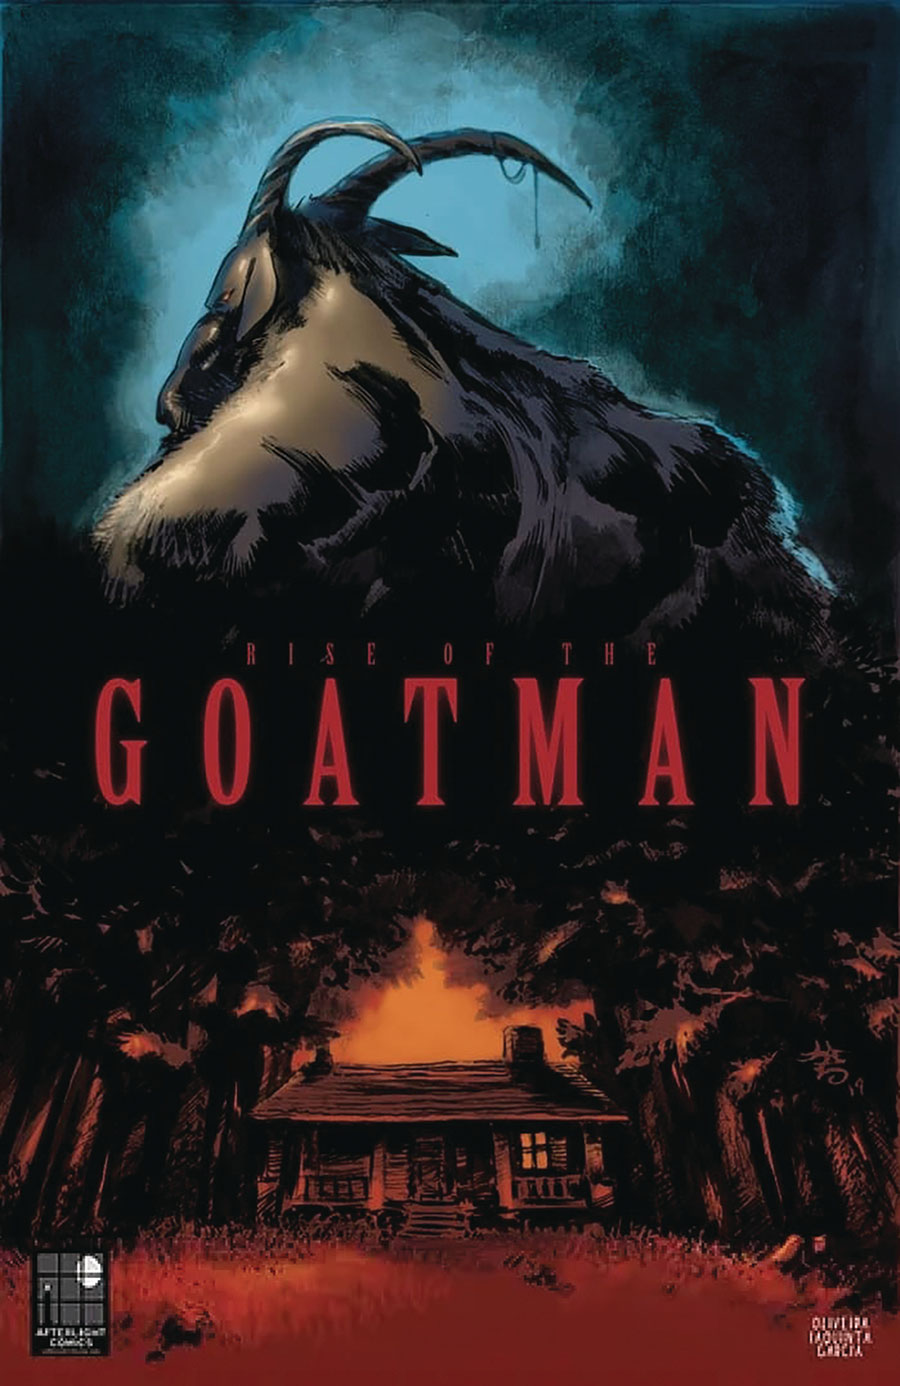 Goatman Trilogy Rise Of The Goatman #1